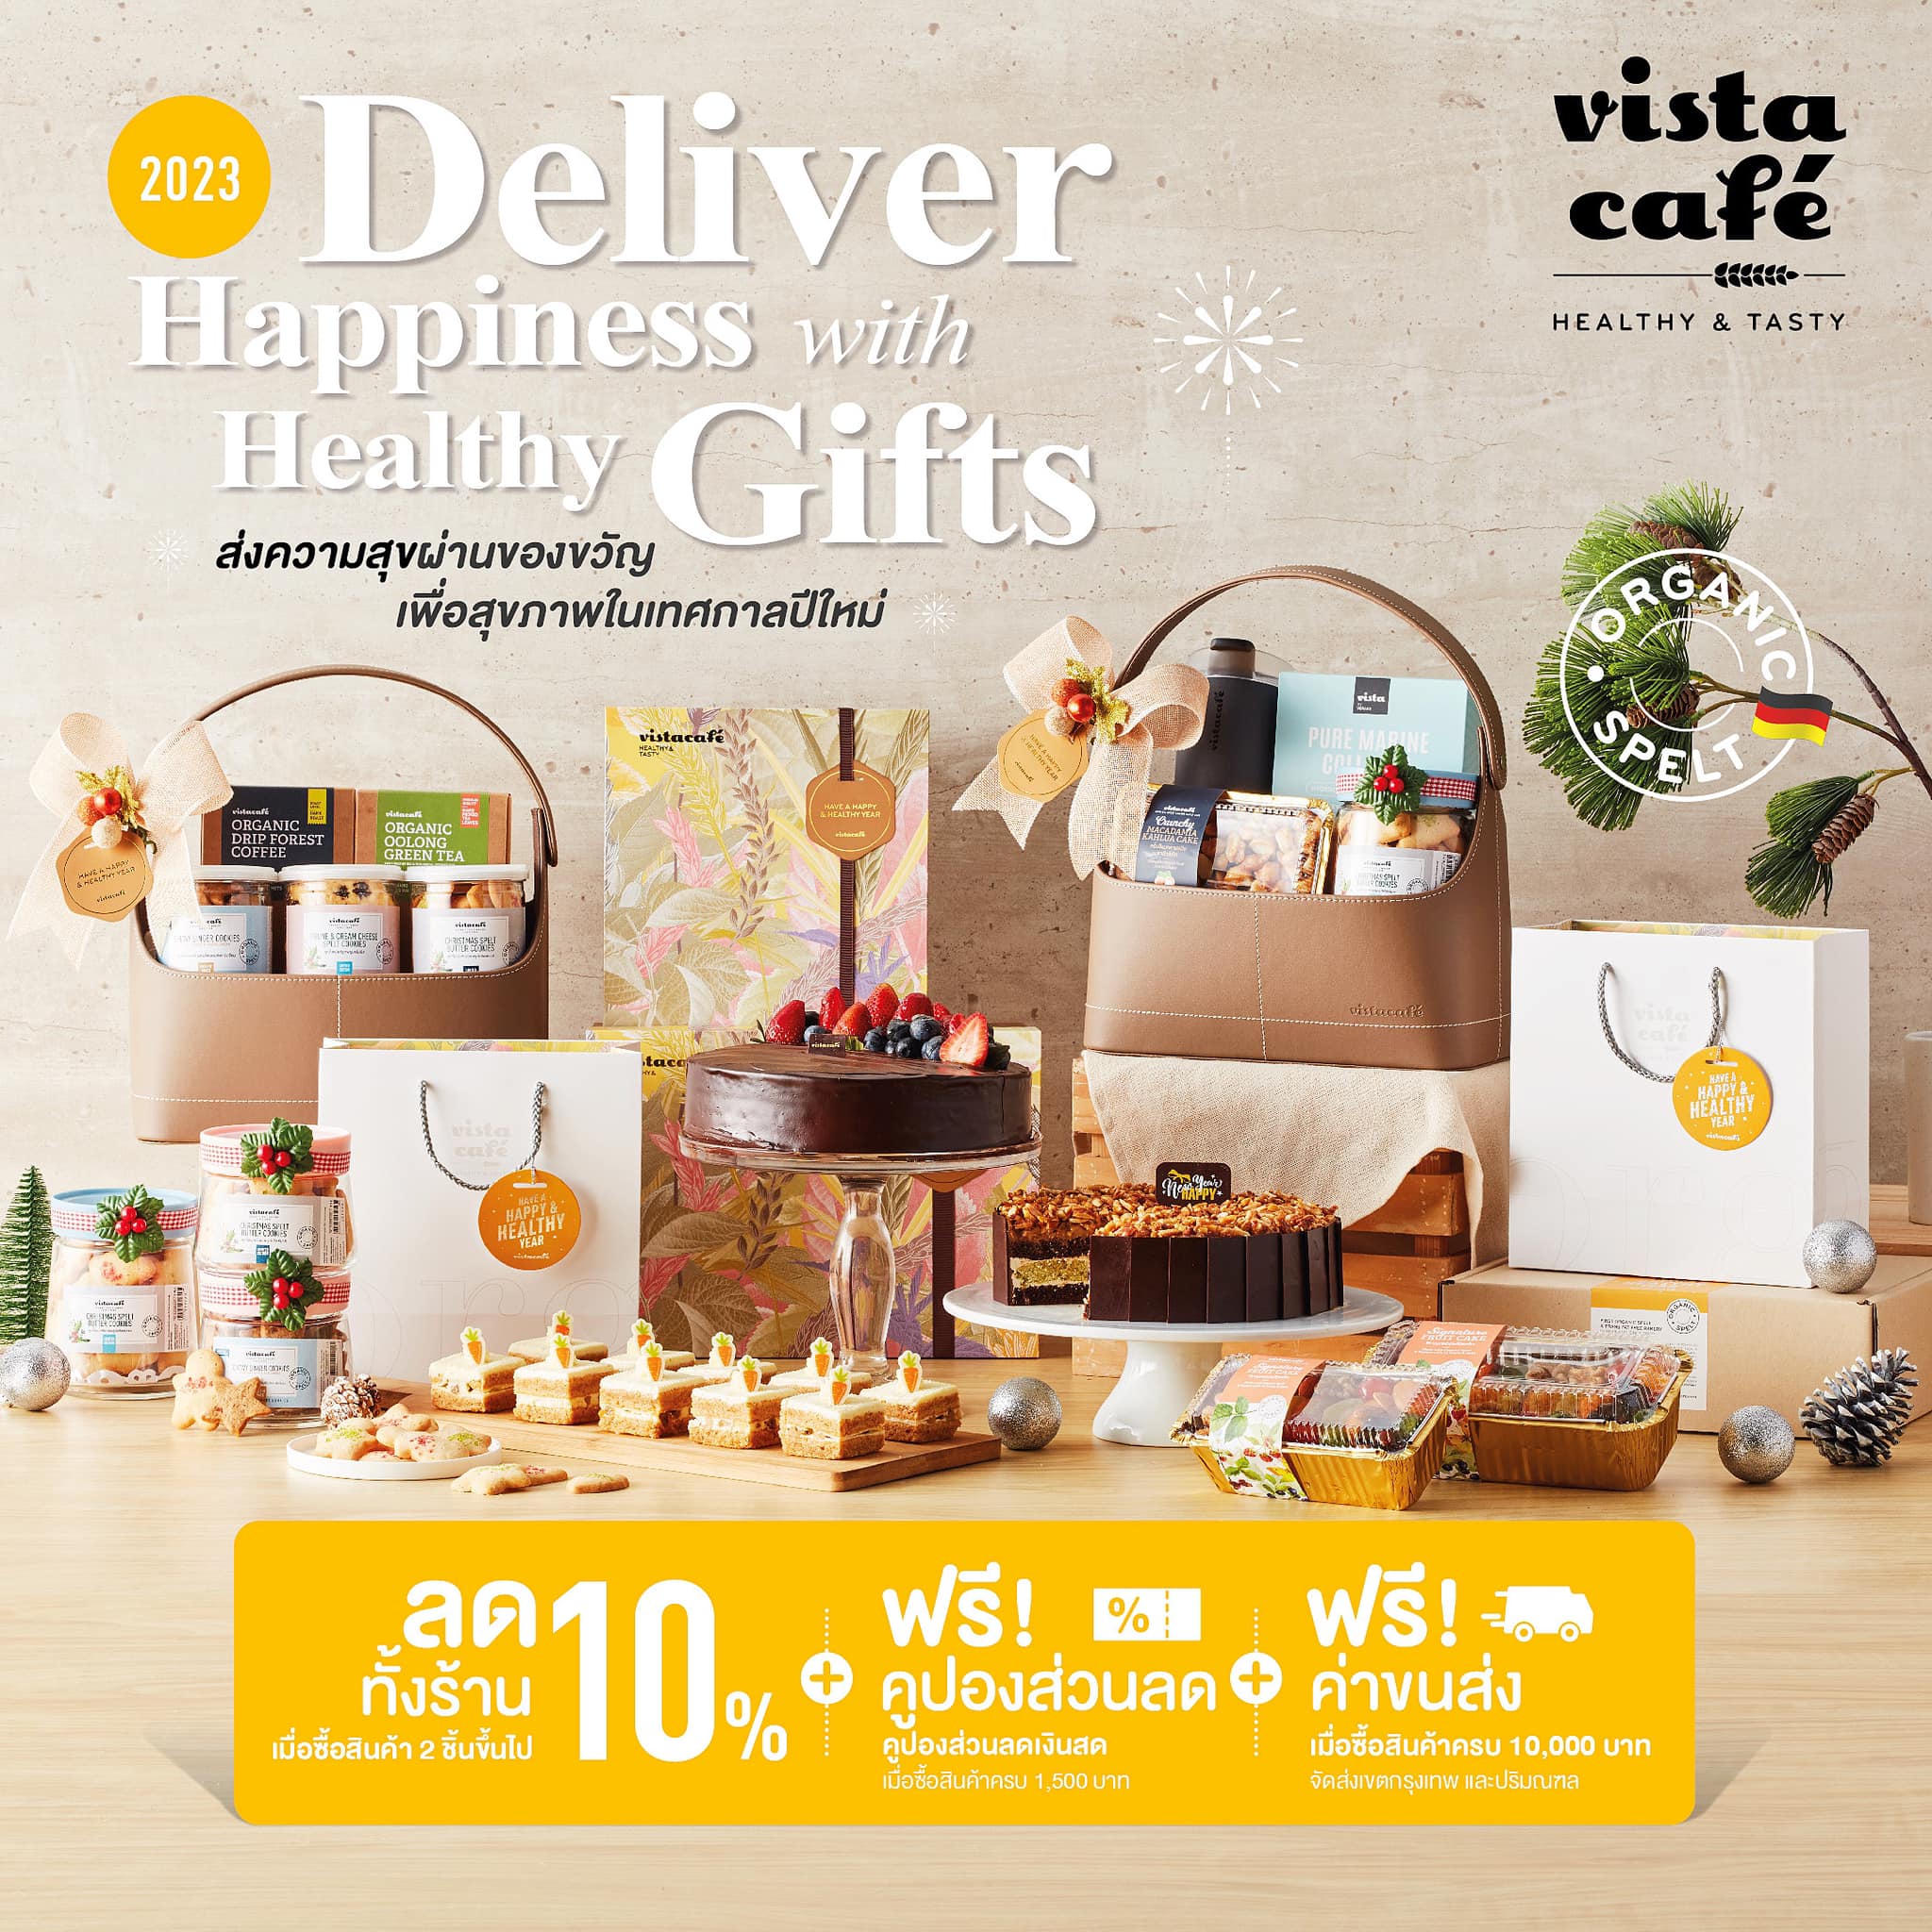 ส่งของขวัญเพื่อสุขภาพ ในช่วงคริสต์มาสและปีใหม่นี้ พร้อมให้ช้อปที่ Vista Café